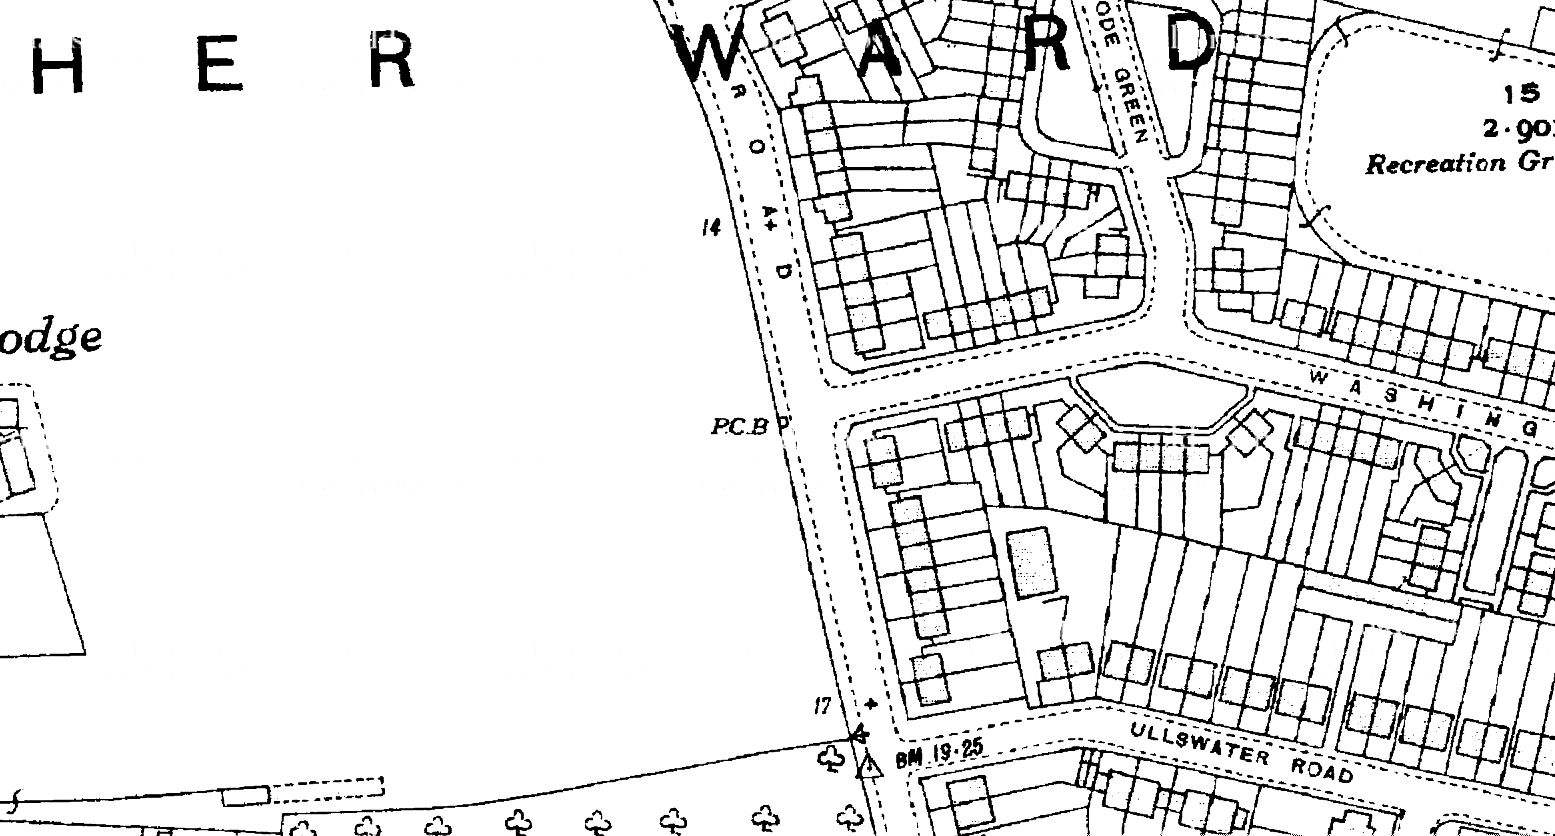 V21--Verdun Road, Castelnau Box--1935 OS map extract 1-2500.png